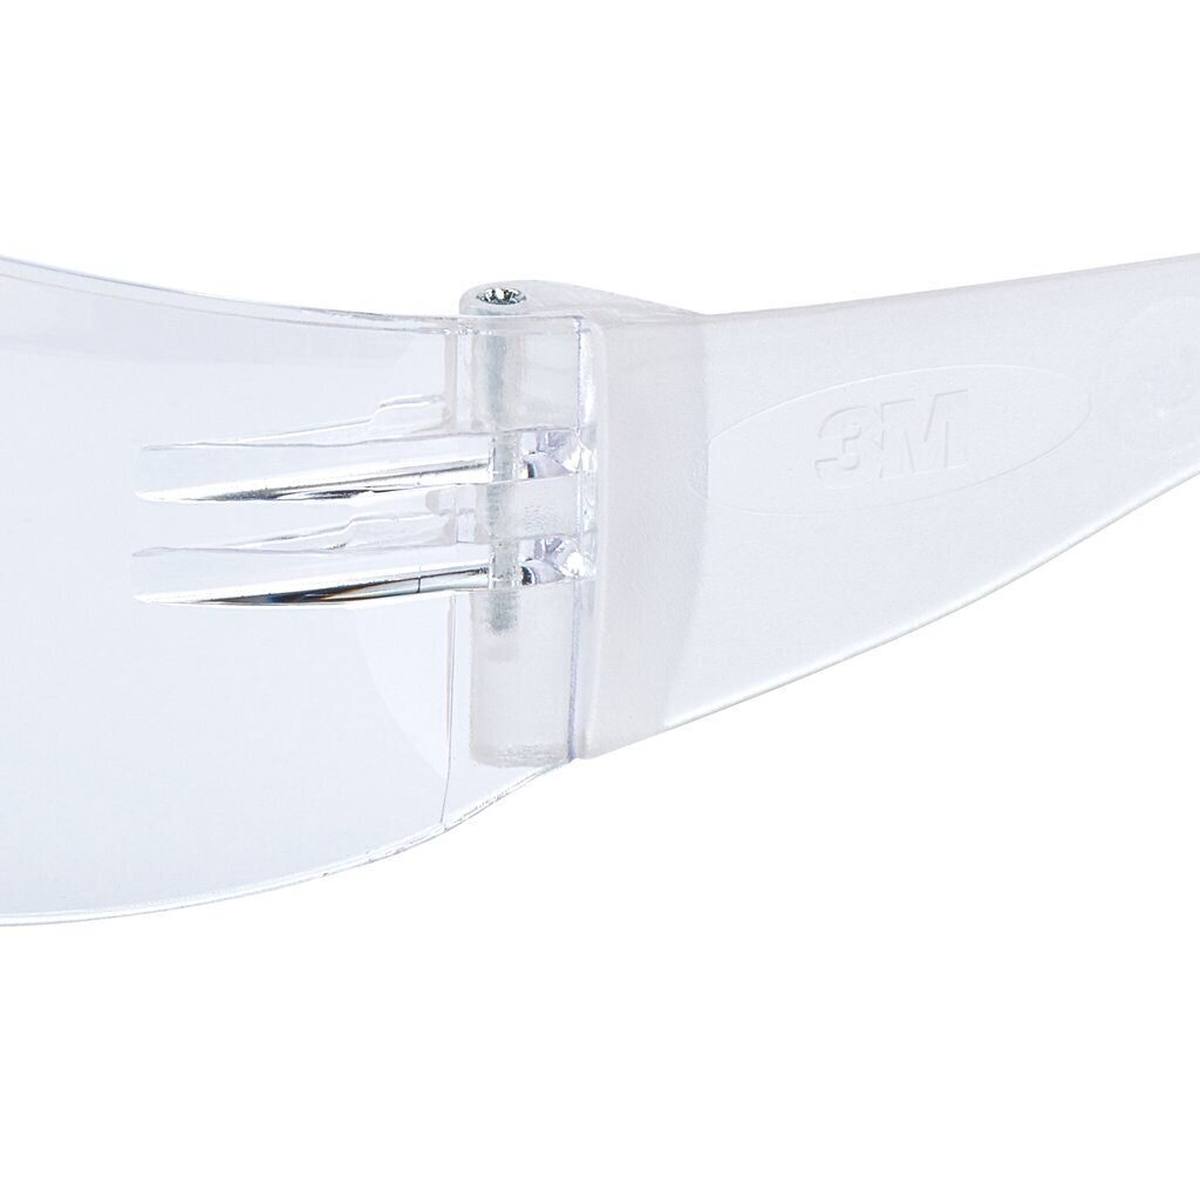 3M Virtua Slim / Kids Fit Schutzbrille mit Antikratz-/Antibeschlag-Beschichtung, transparenten Gläsern, 71500-00008